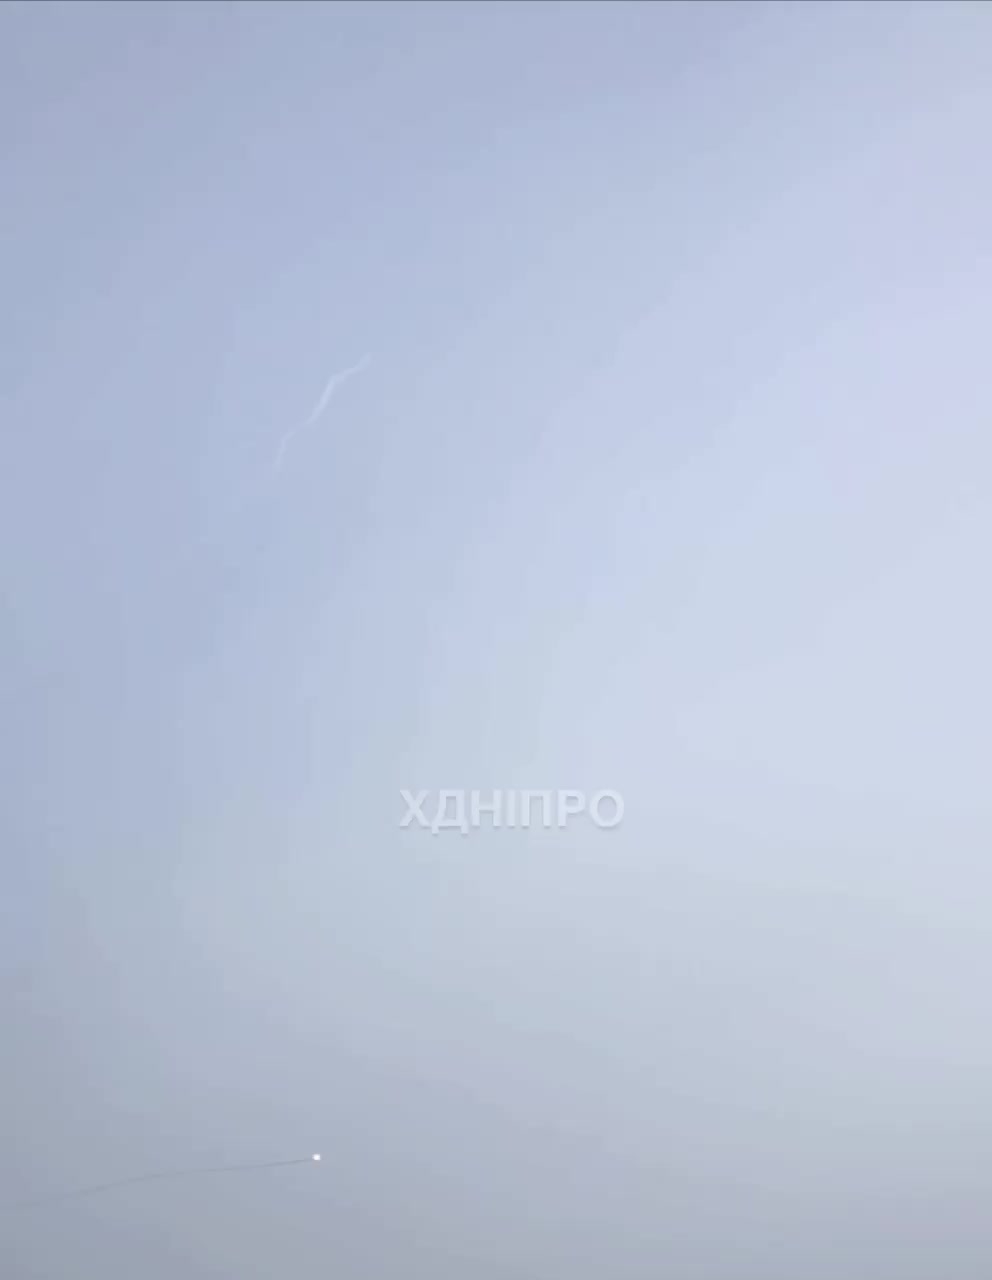 ПВО сбила ракету над Днепром